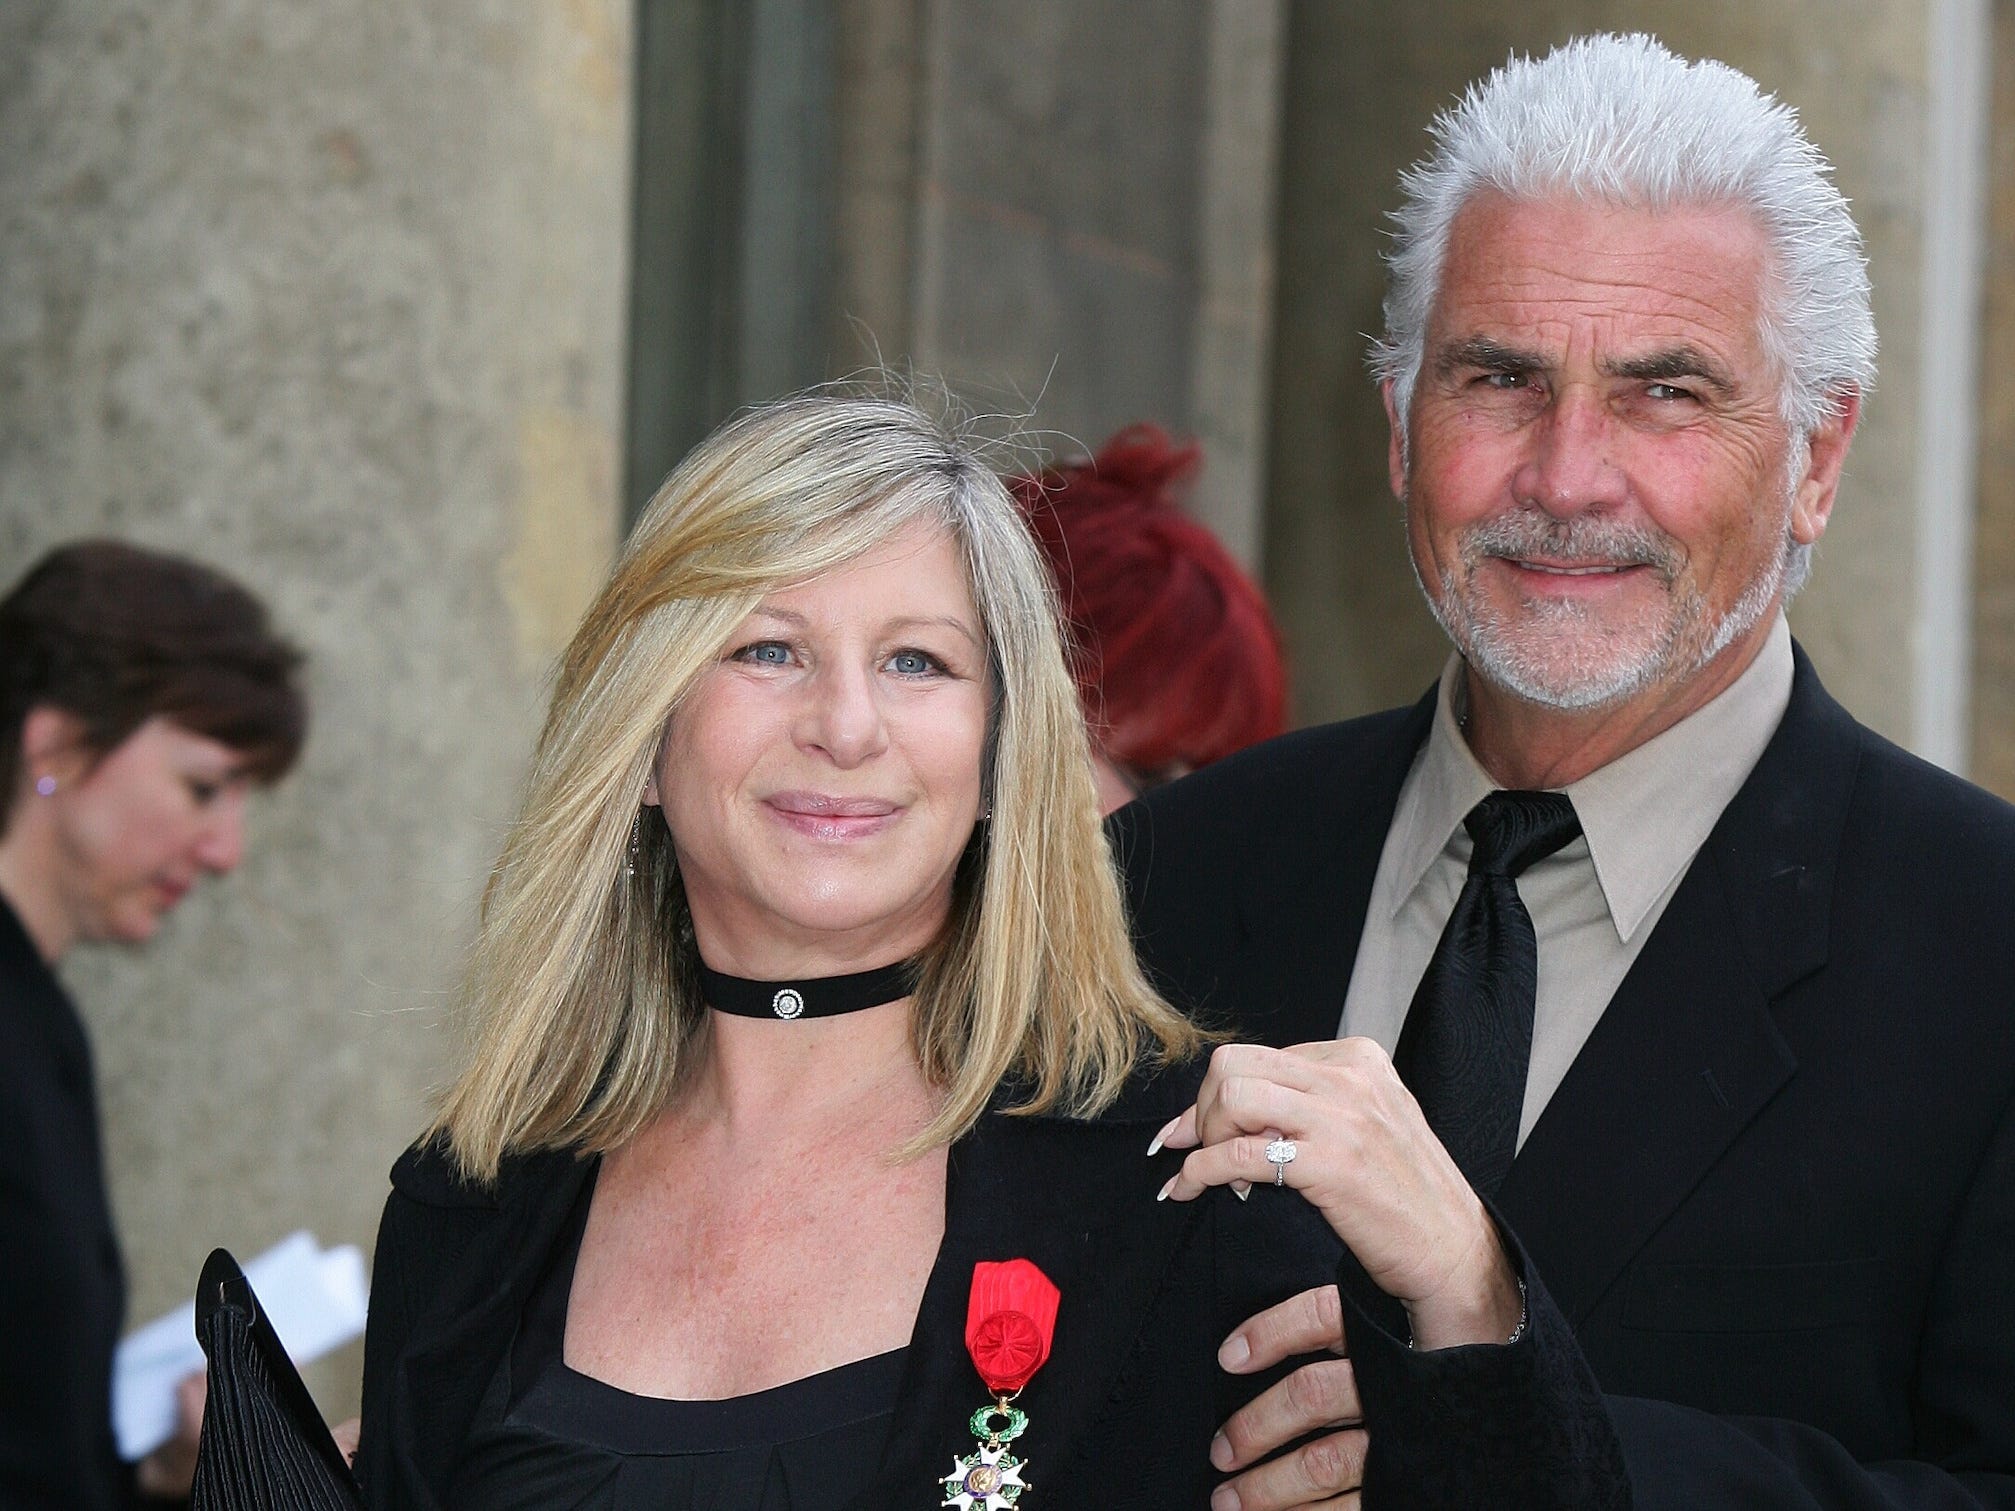 Barbra Streisand, in einem schwarzen Hemd und Blazer, steht mit einer Medaille am Revers.  Ehemann James Brolin steht im schwarzen Anzug hinter ihr und umarmt sie.